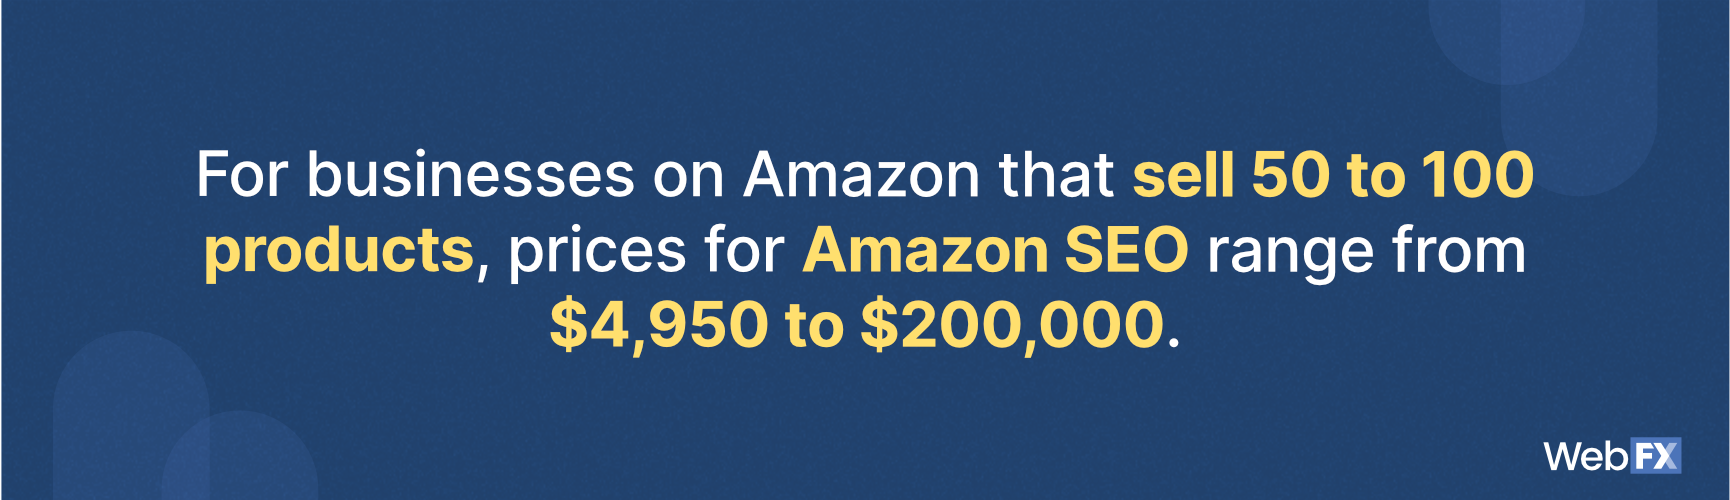 亚马逊搜索引擎优化定价的企业出售50到100个产品